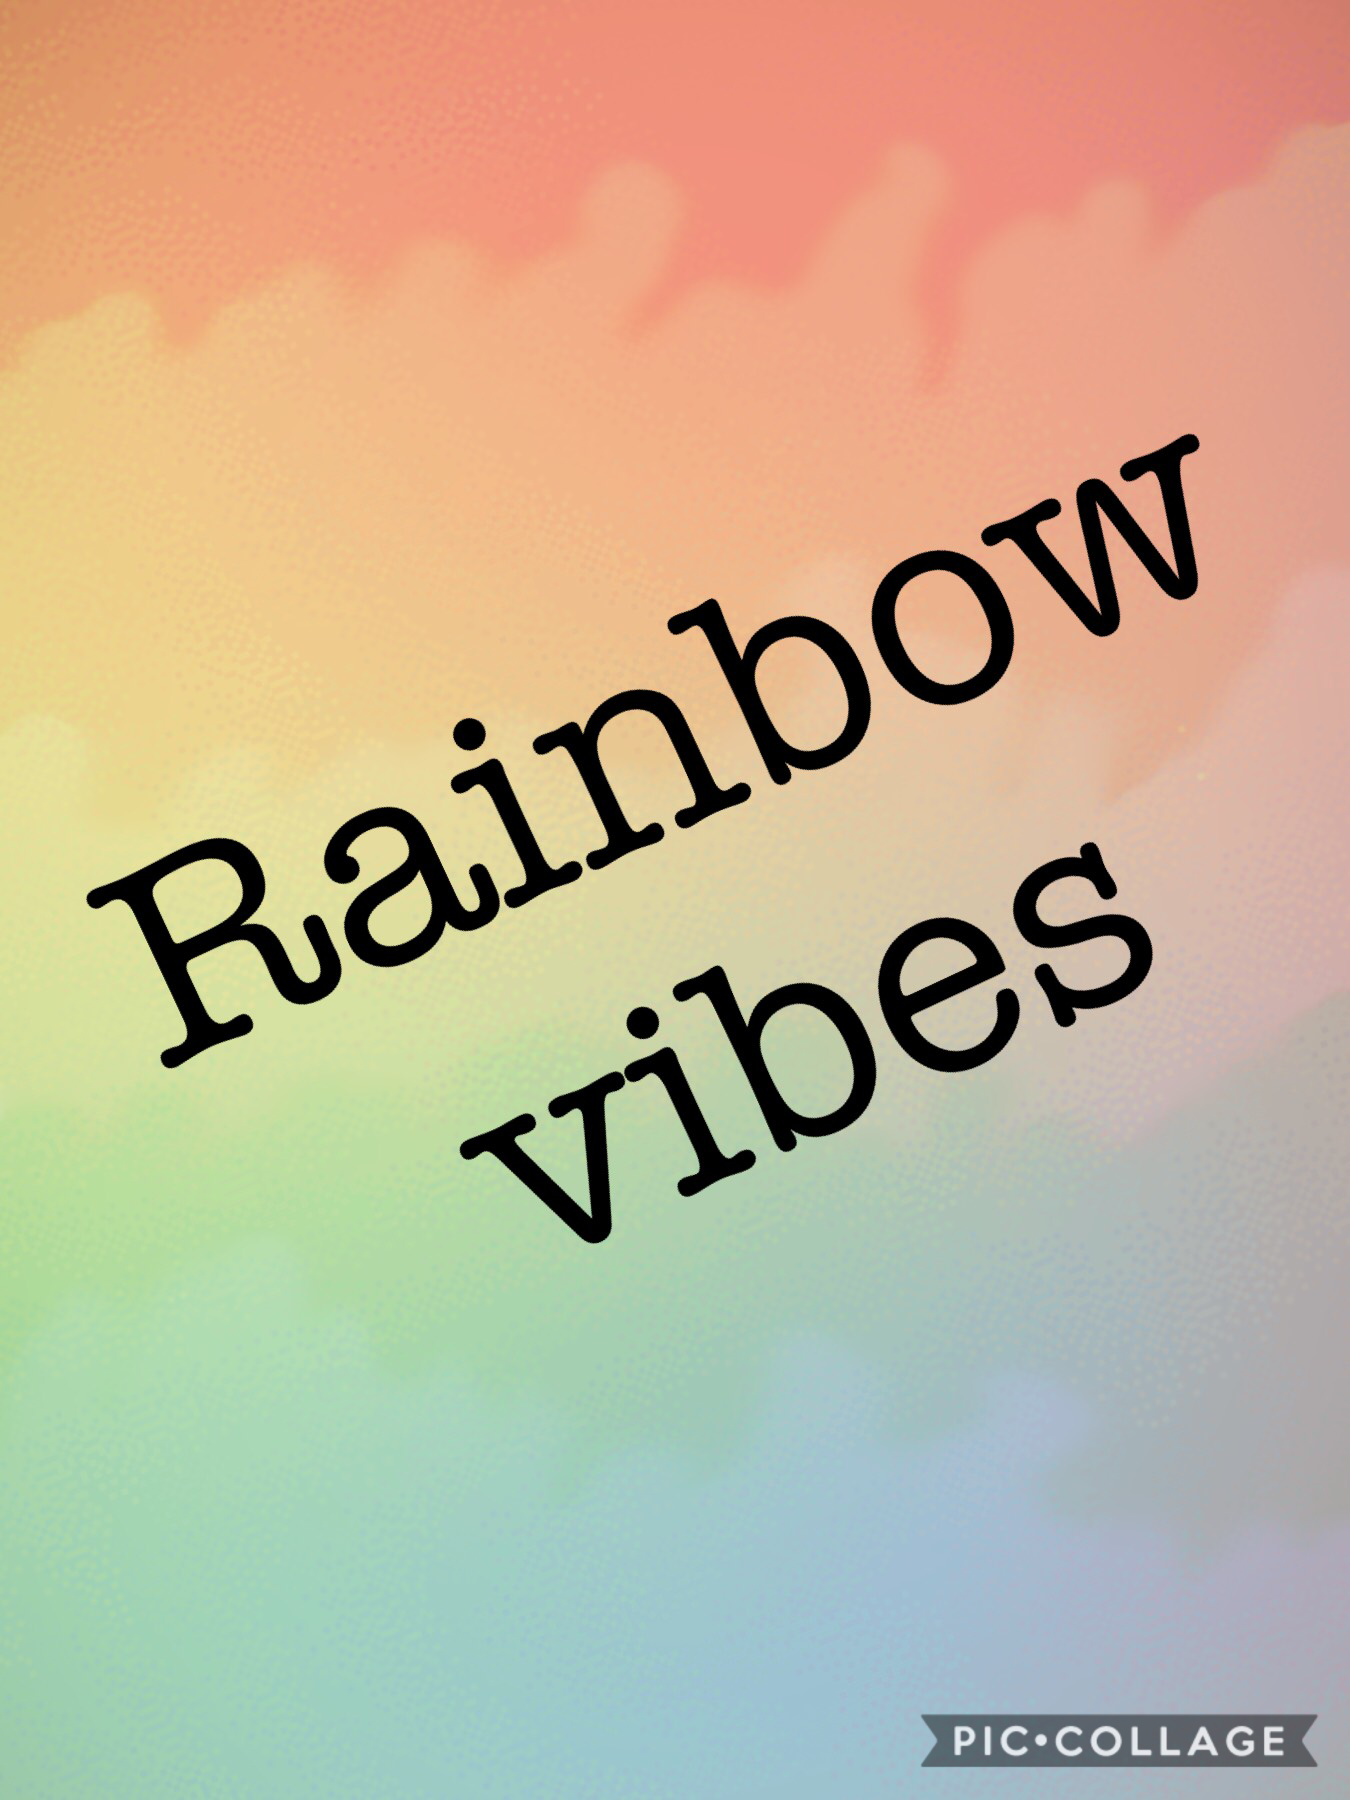 Omg rainbow vibes